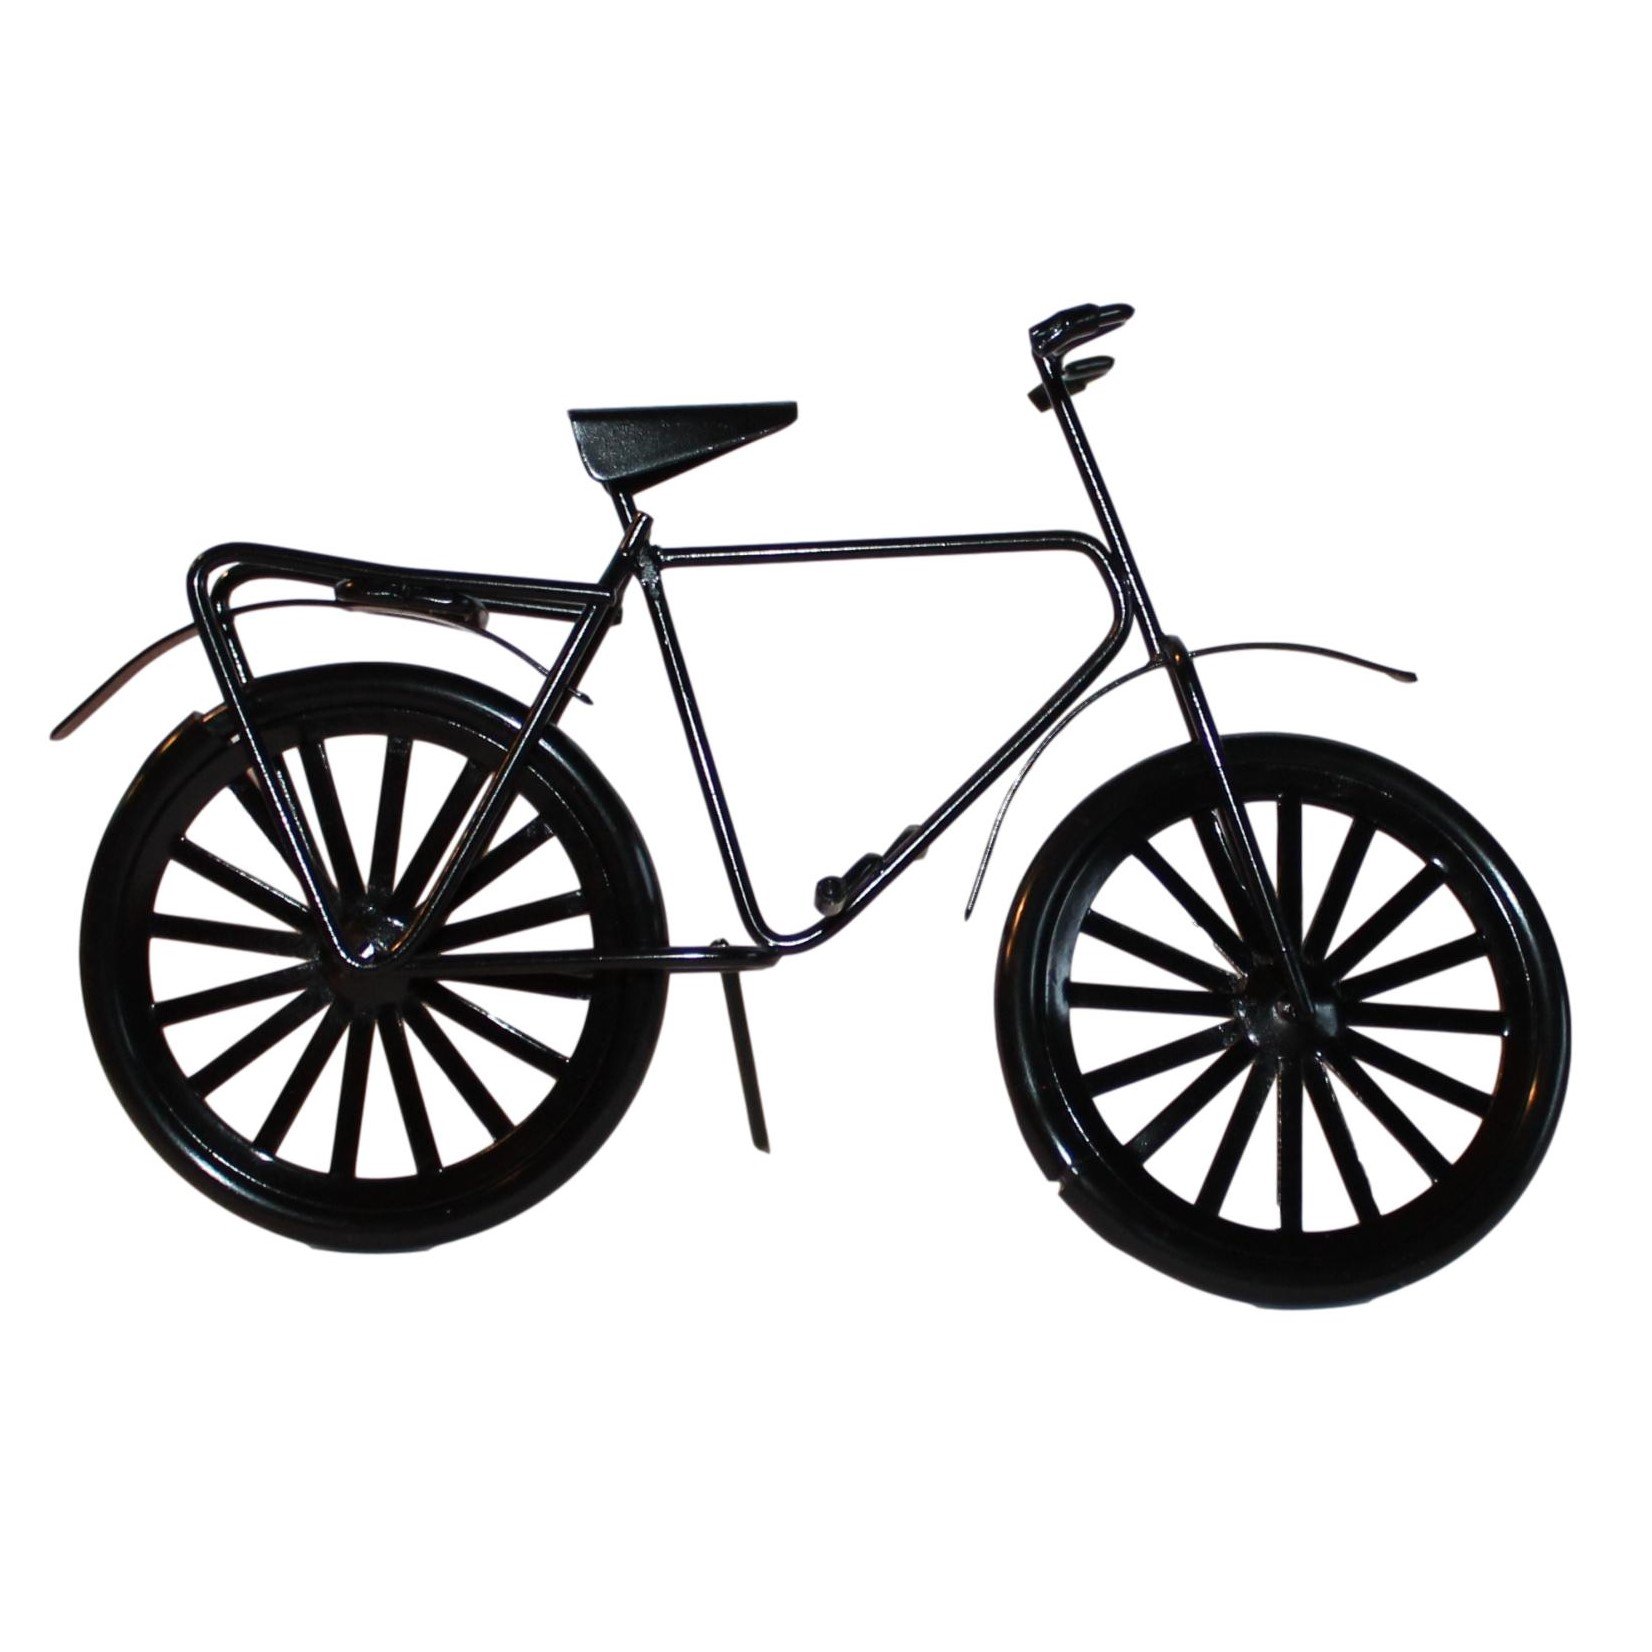 Sort cykel i metal